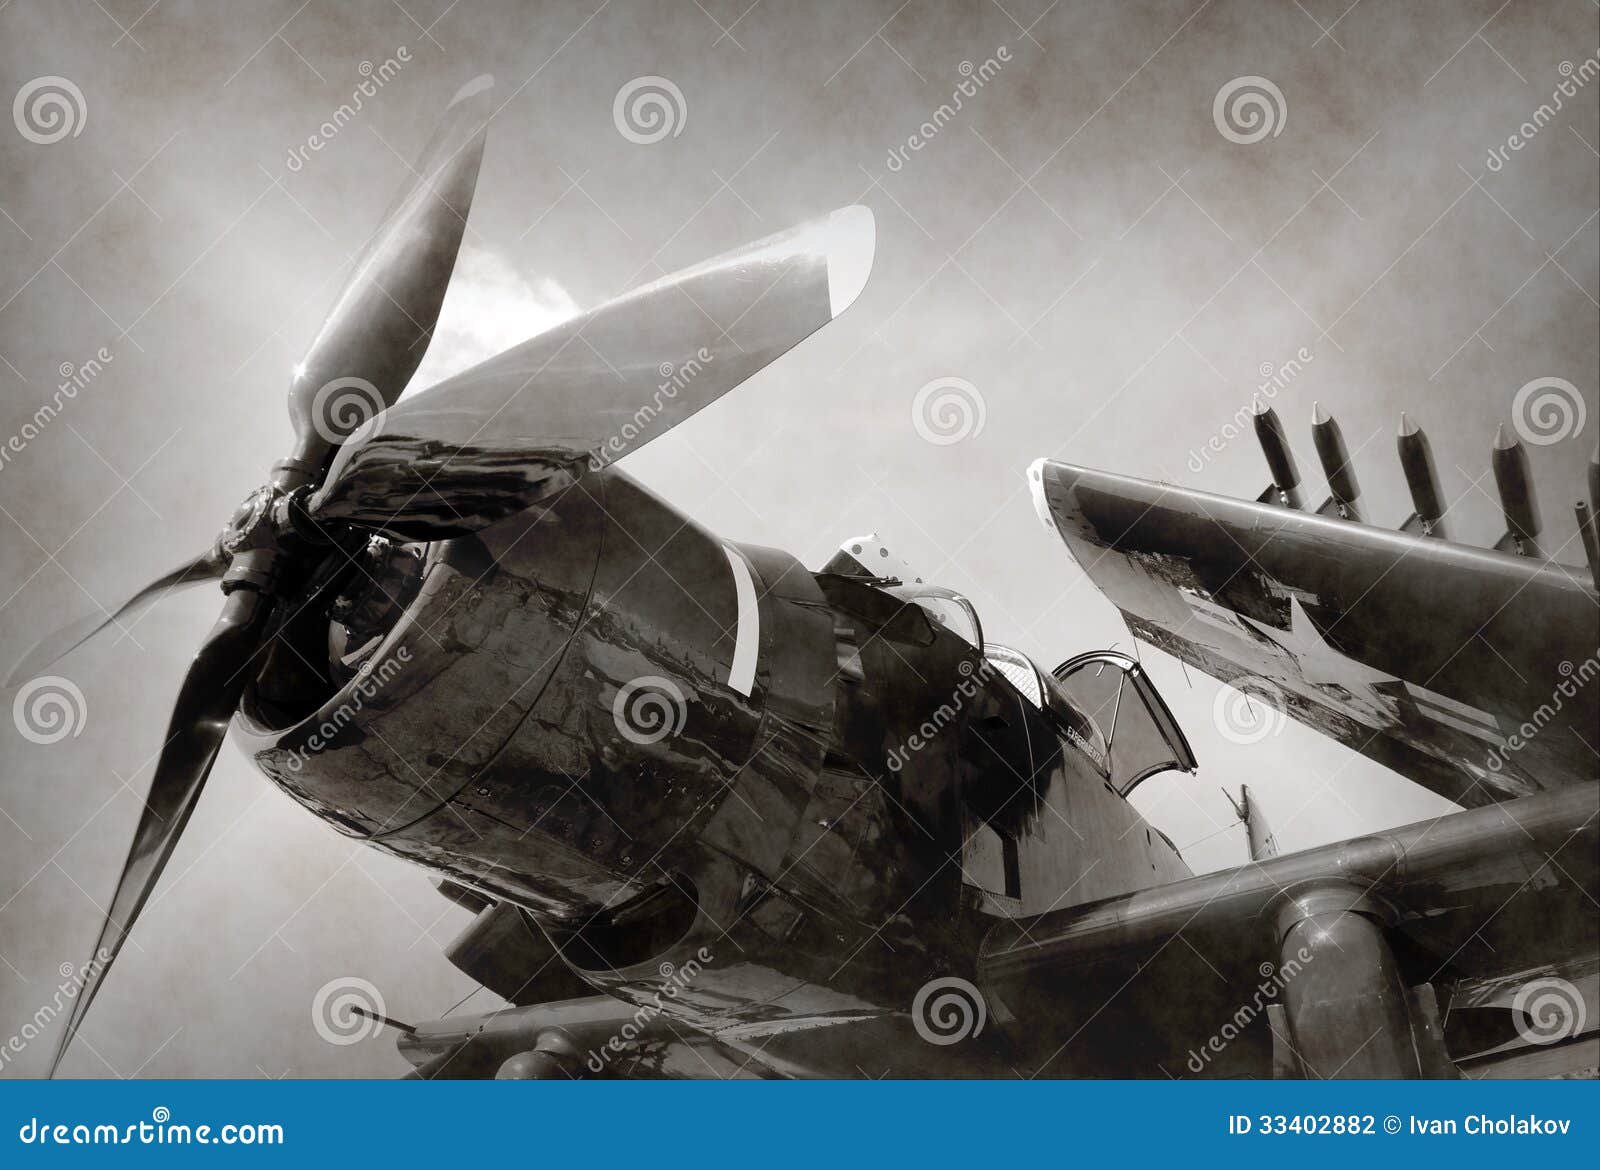 world war ii era fighter plane